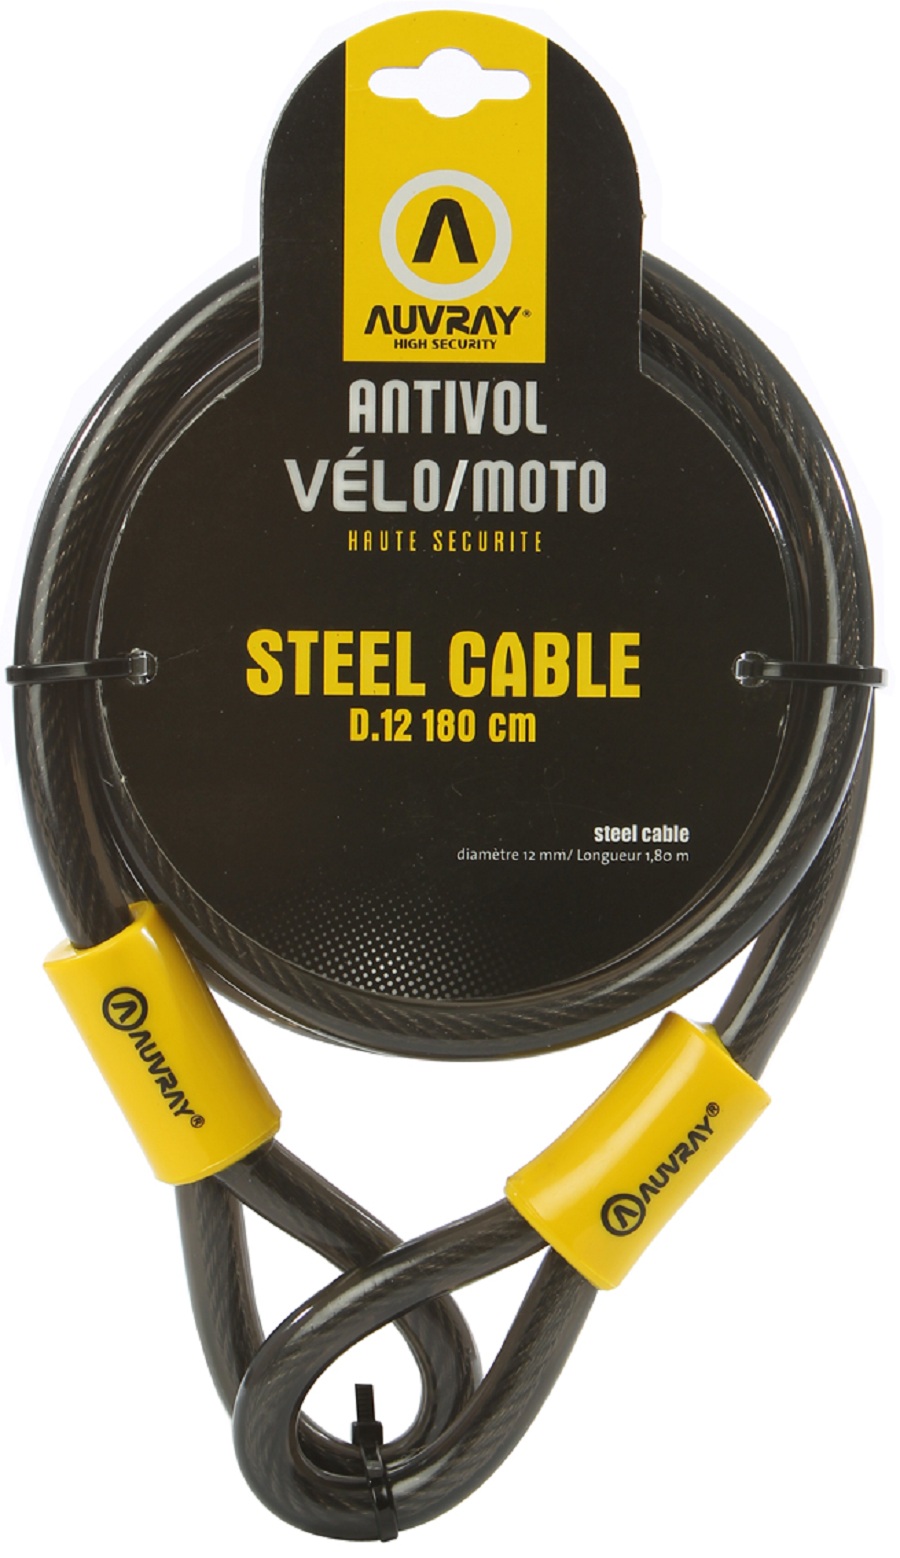 Cable De Seguridad Auvray Steelcable D.12 En 1800 Mm - amarillo-negro - 